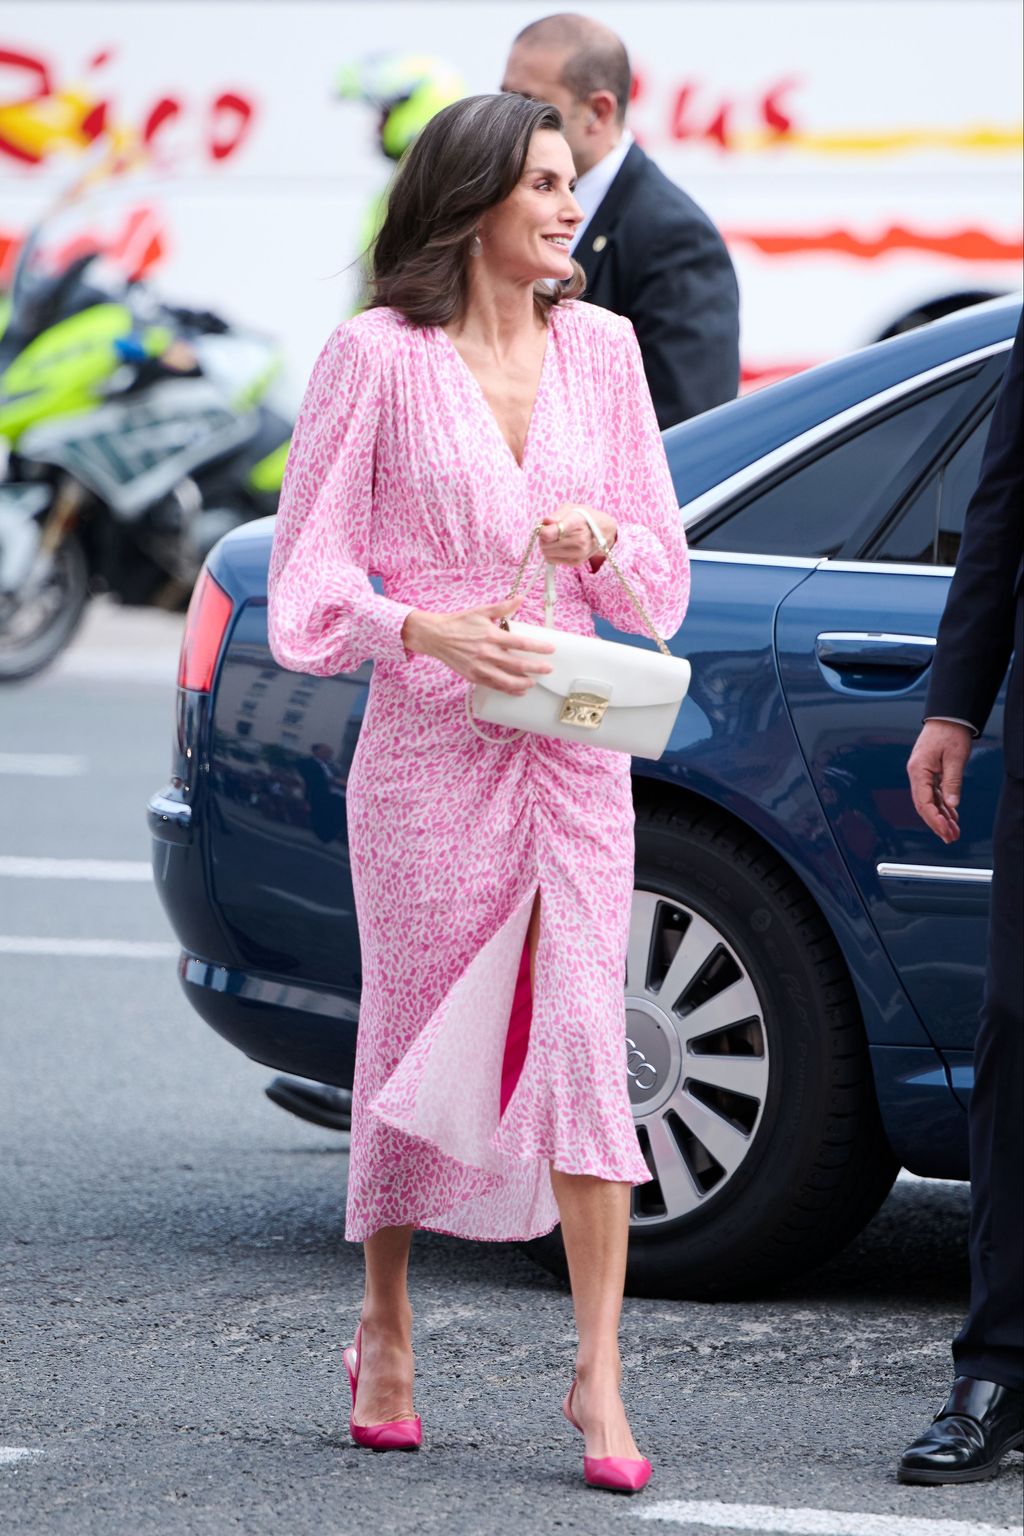 El vestido de la reina Letizia se ha abierto con el viento